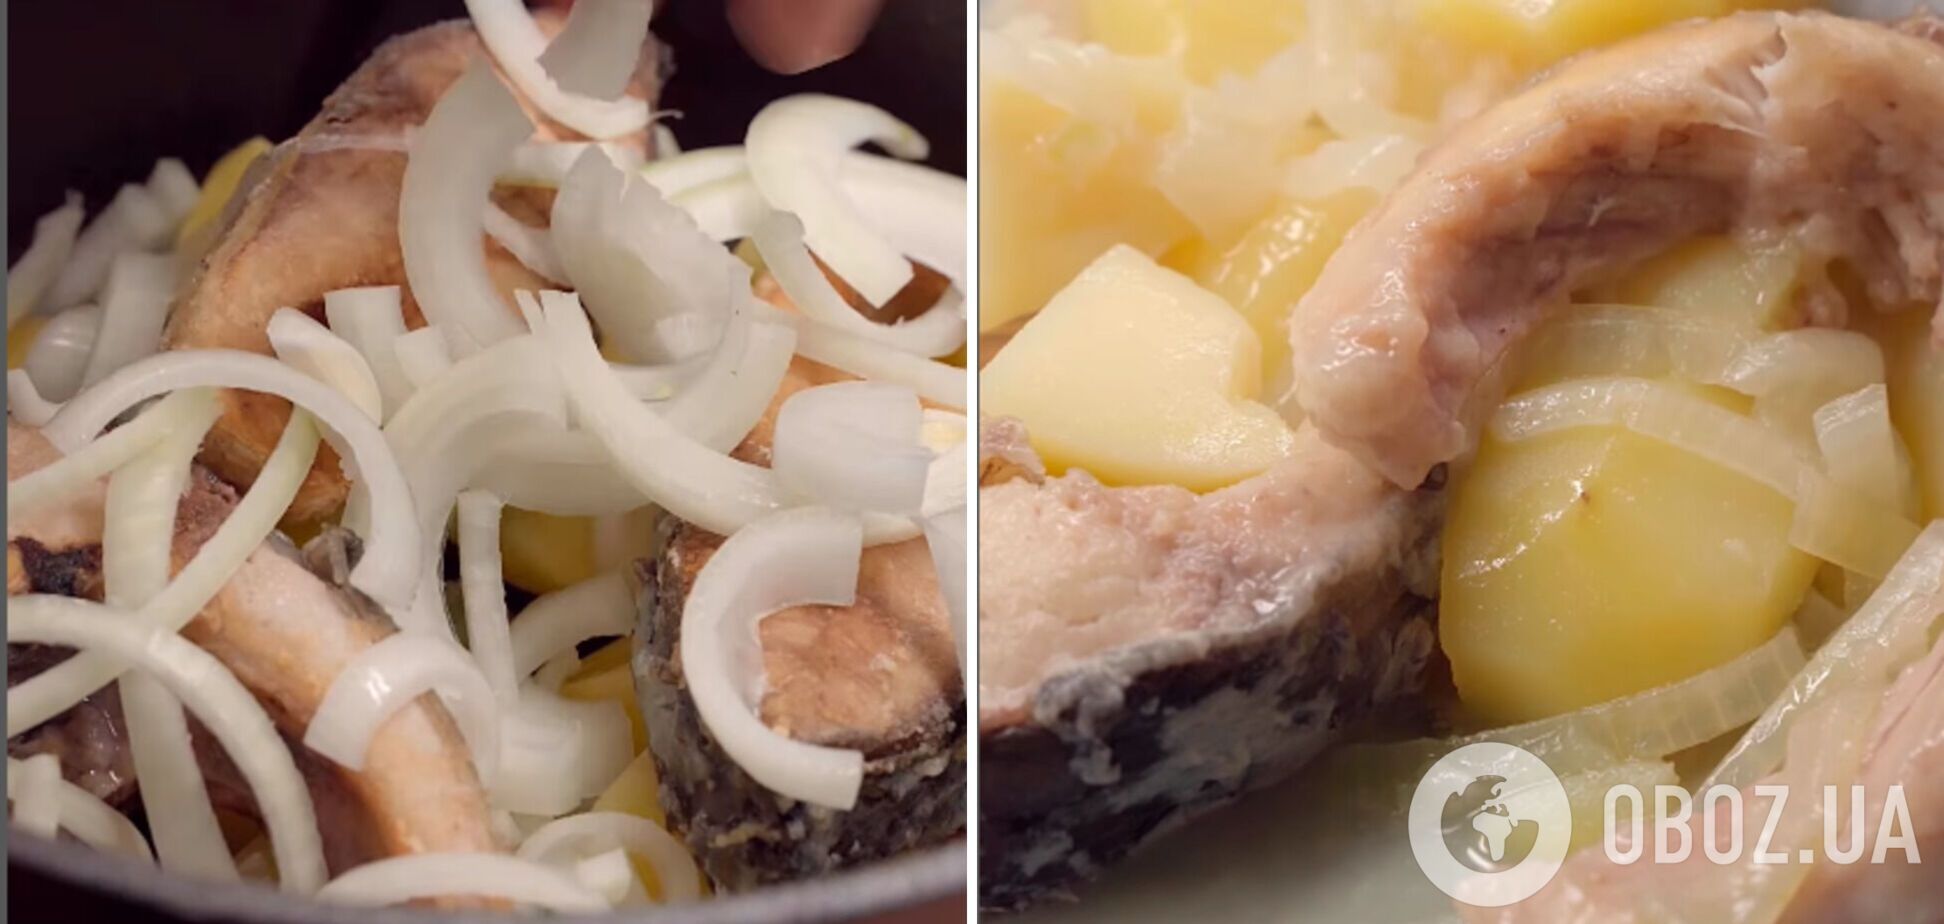 Картофель, тушеный с карпом: украинское аутентичное блюдо